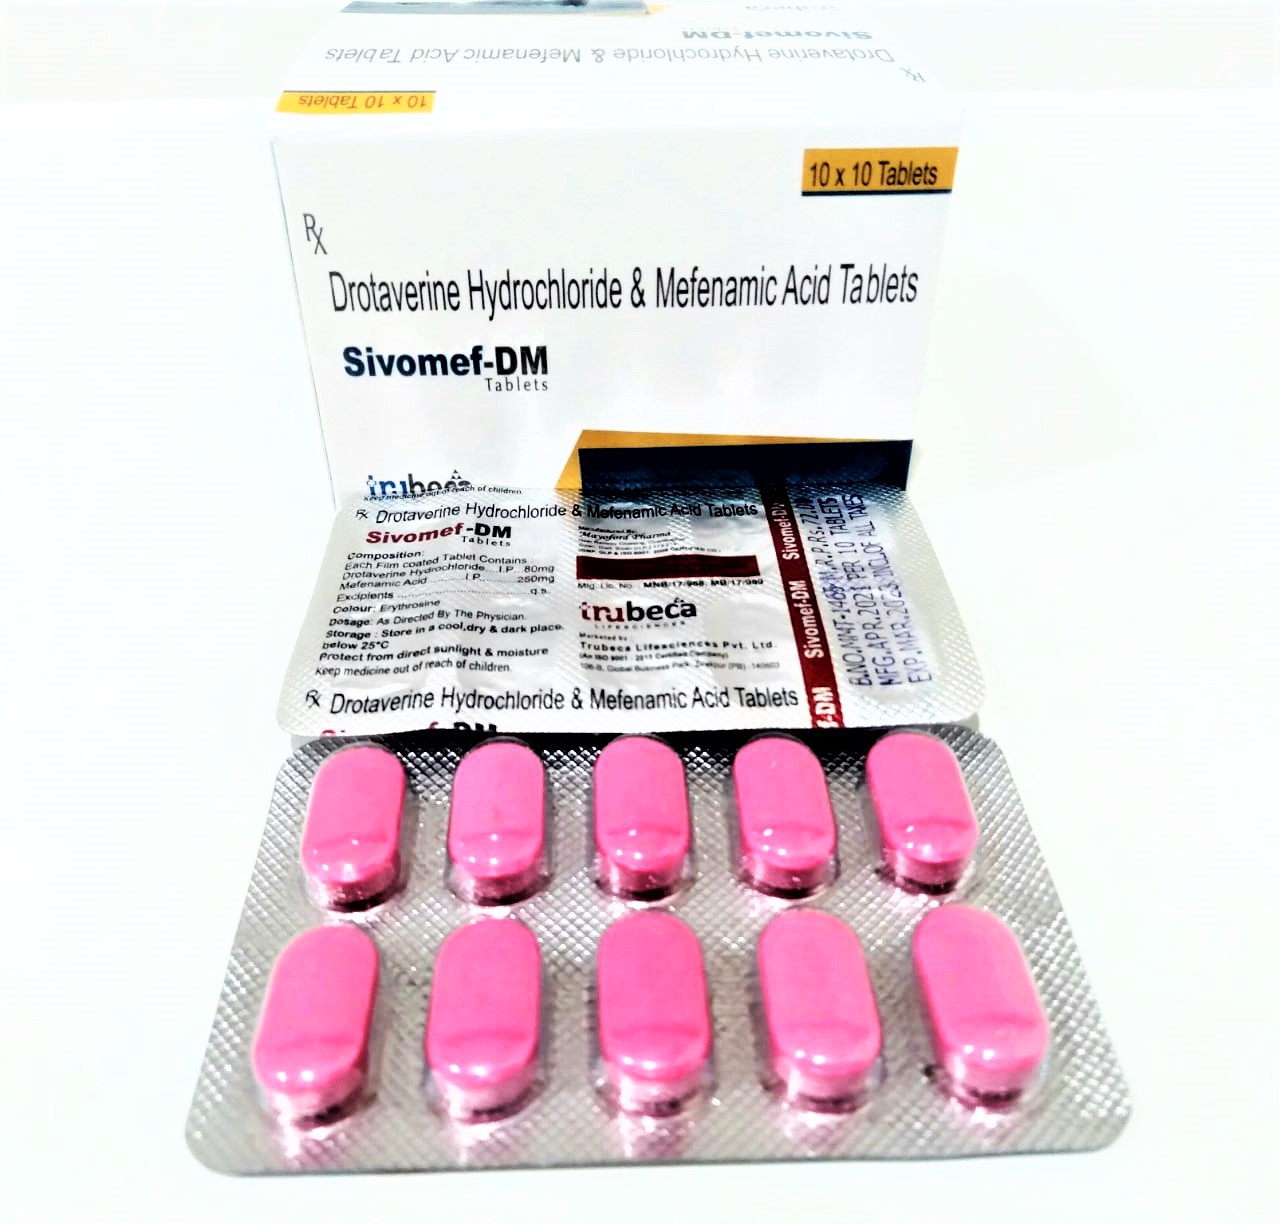 drotaverine 80mg + mefenamic acid 250mg tablet